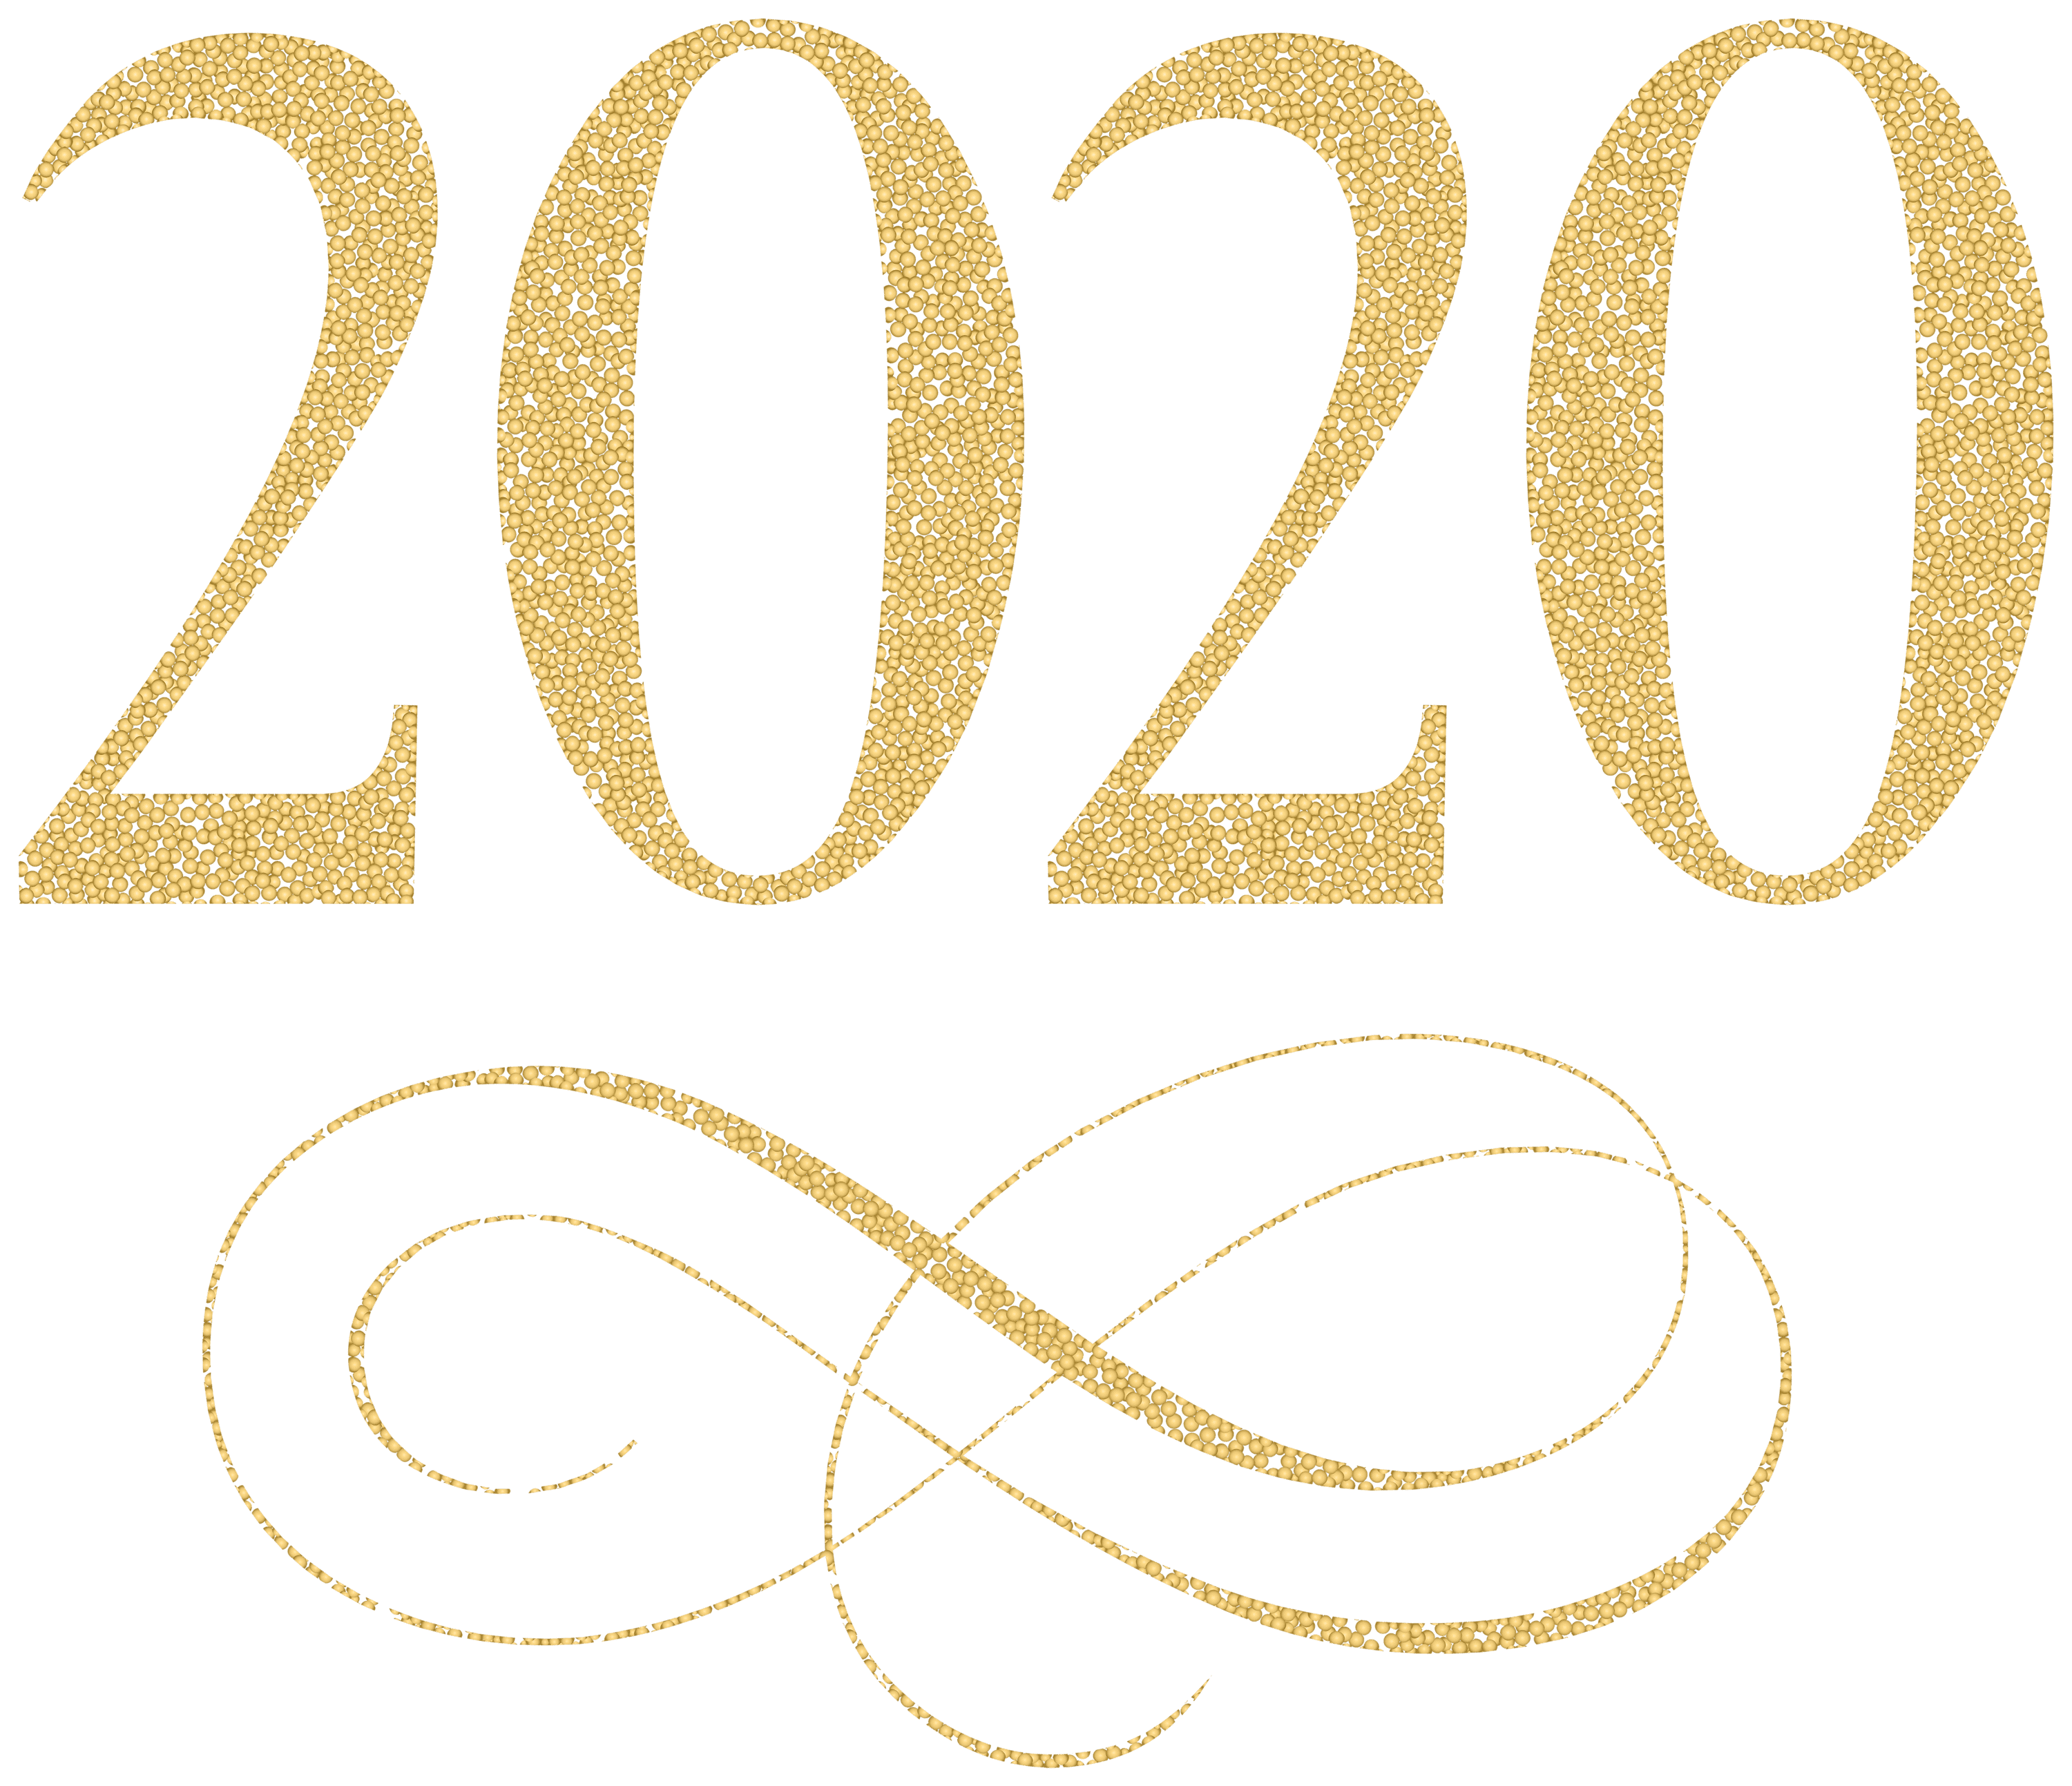 2020_Transparent_Gold_PNG_Clip_Art